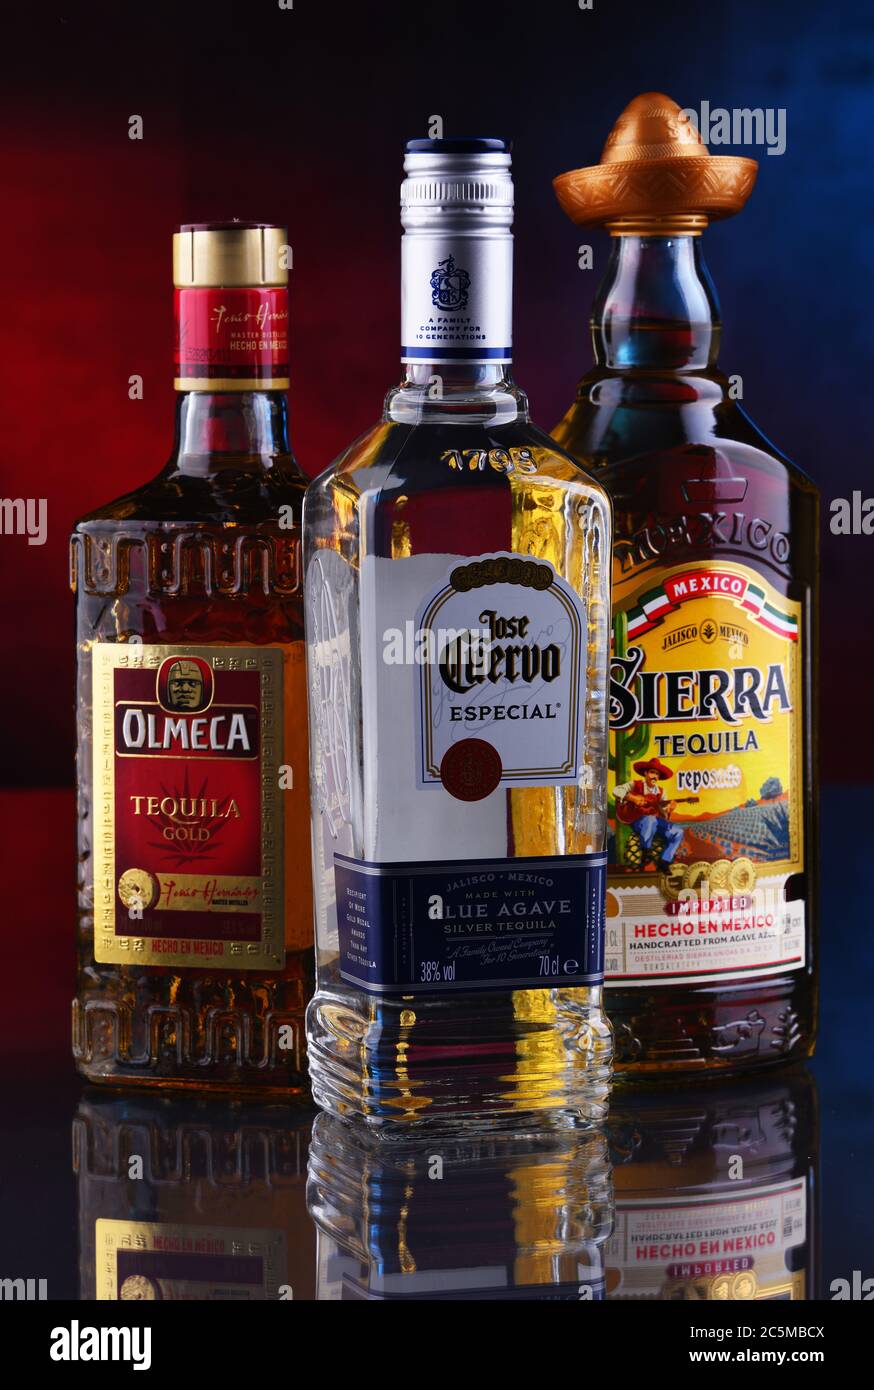 POSEN, POL - 29. JAN 2020: Flaschen der meistverkauften globalen Tequila-Marken,  darunter Jose Cuervo, Olmeca und Sierra Stockfotografie - Alamy